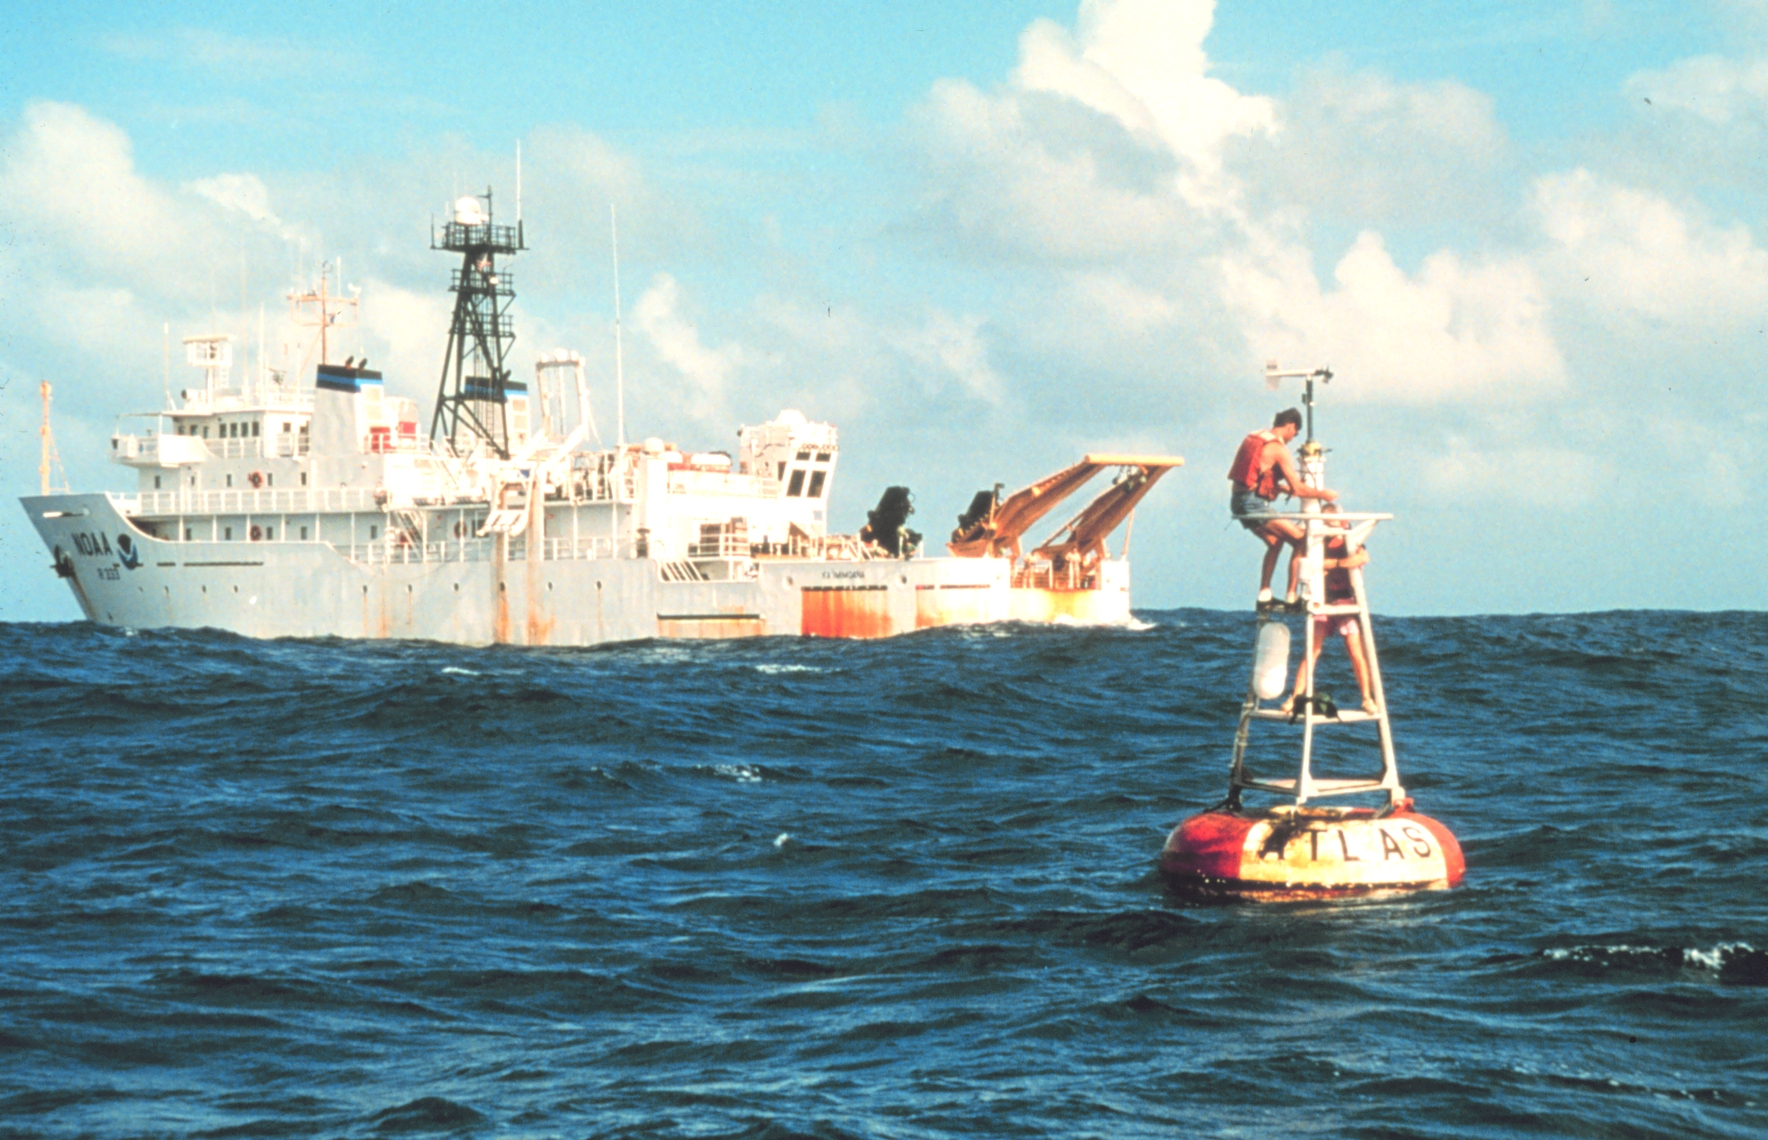 buoy near coast guard boat in open water